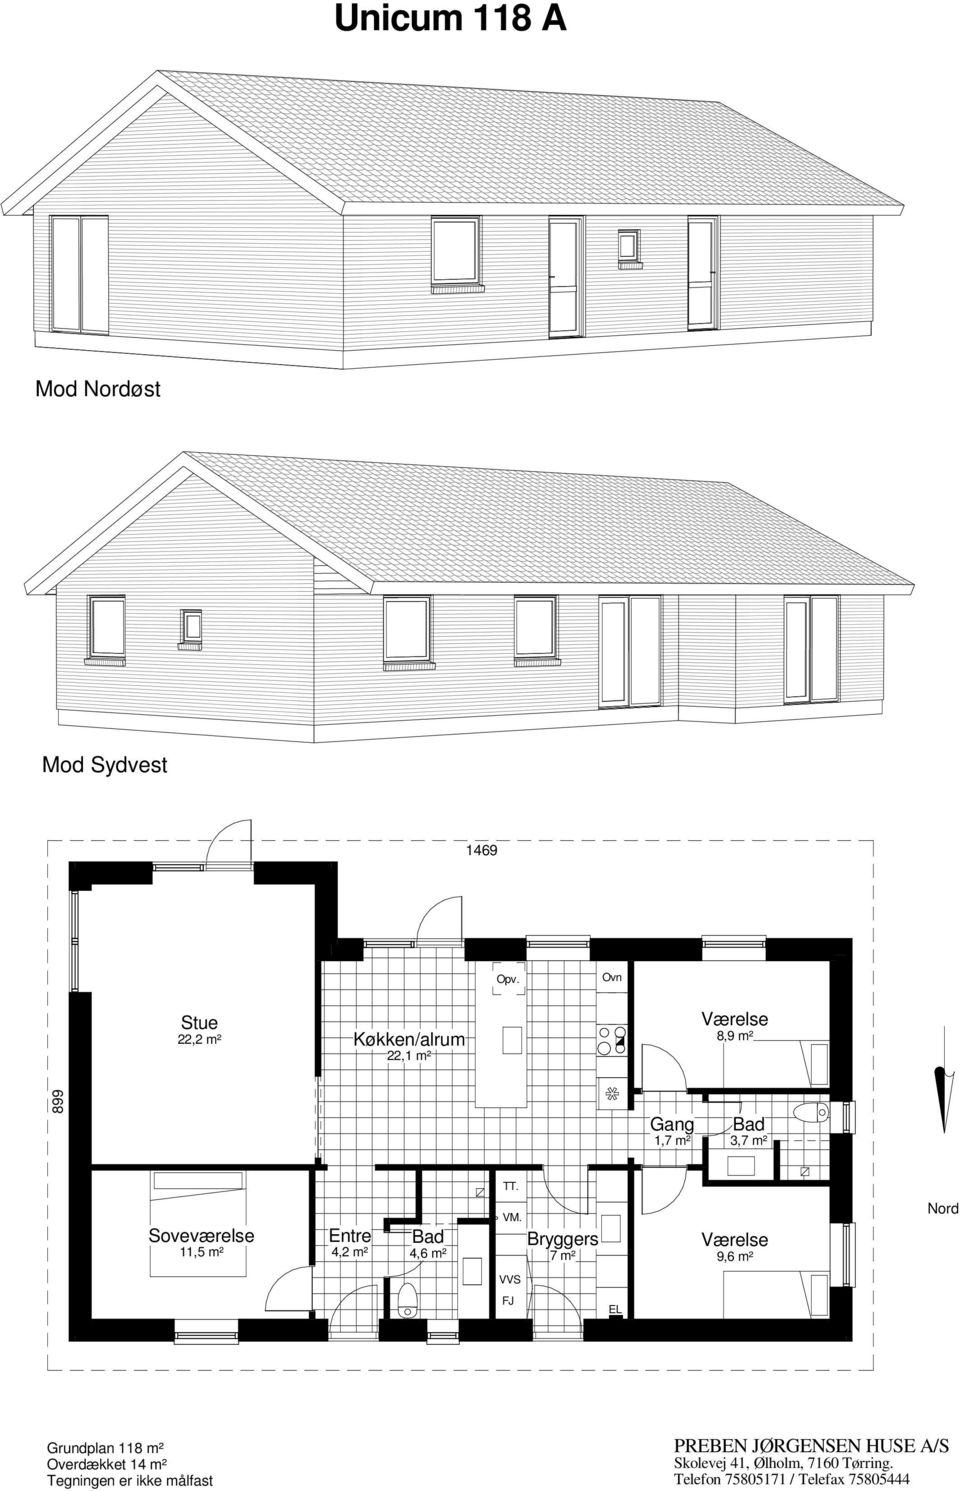 m² 3,7 m² 11,5 m² 4,2 m² 4,6 m² 7 m² 9,6